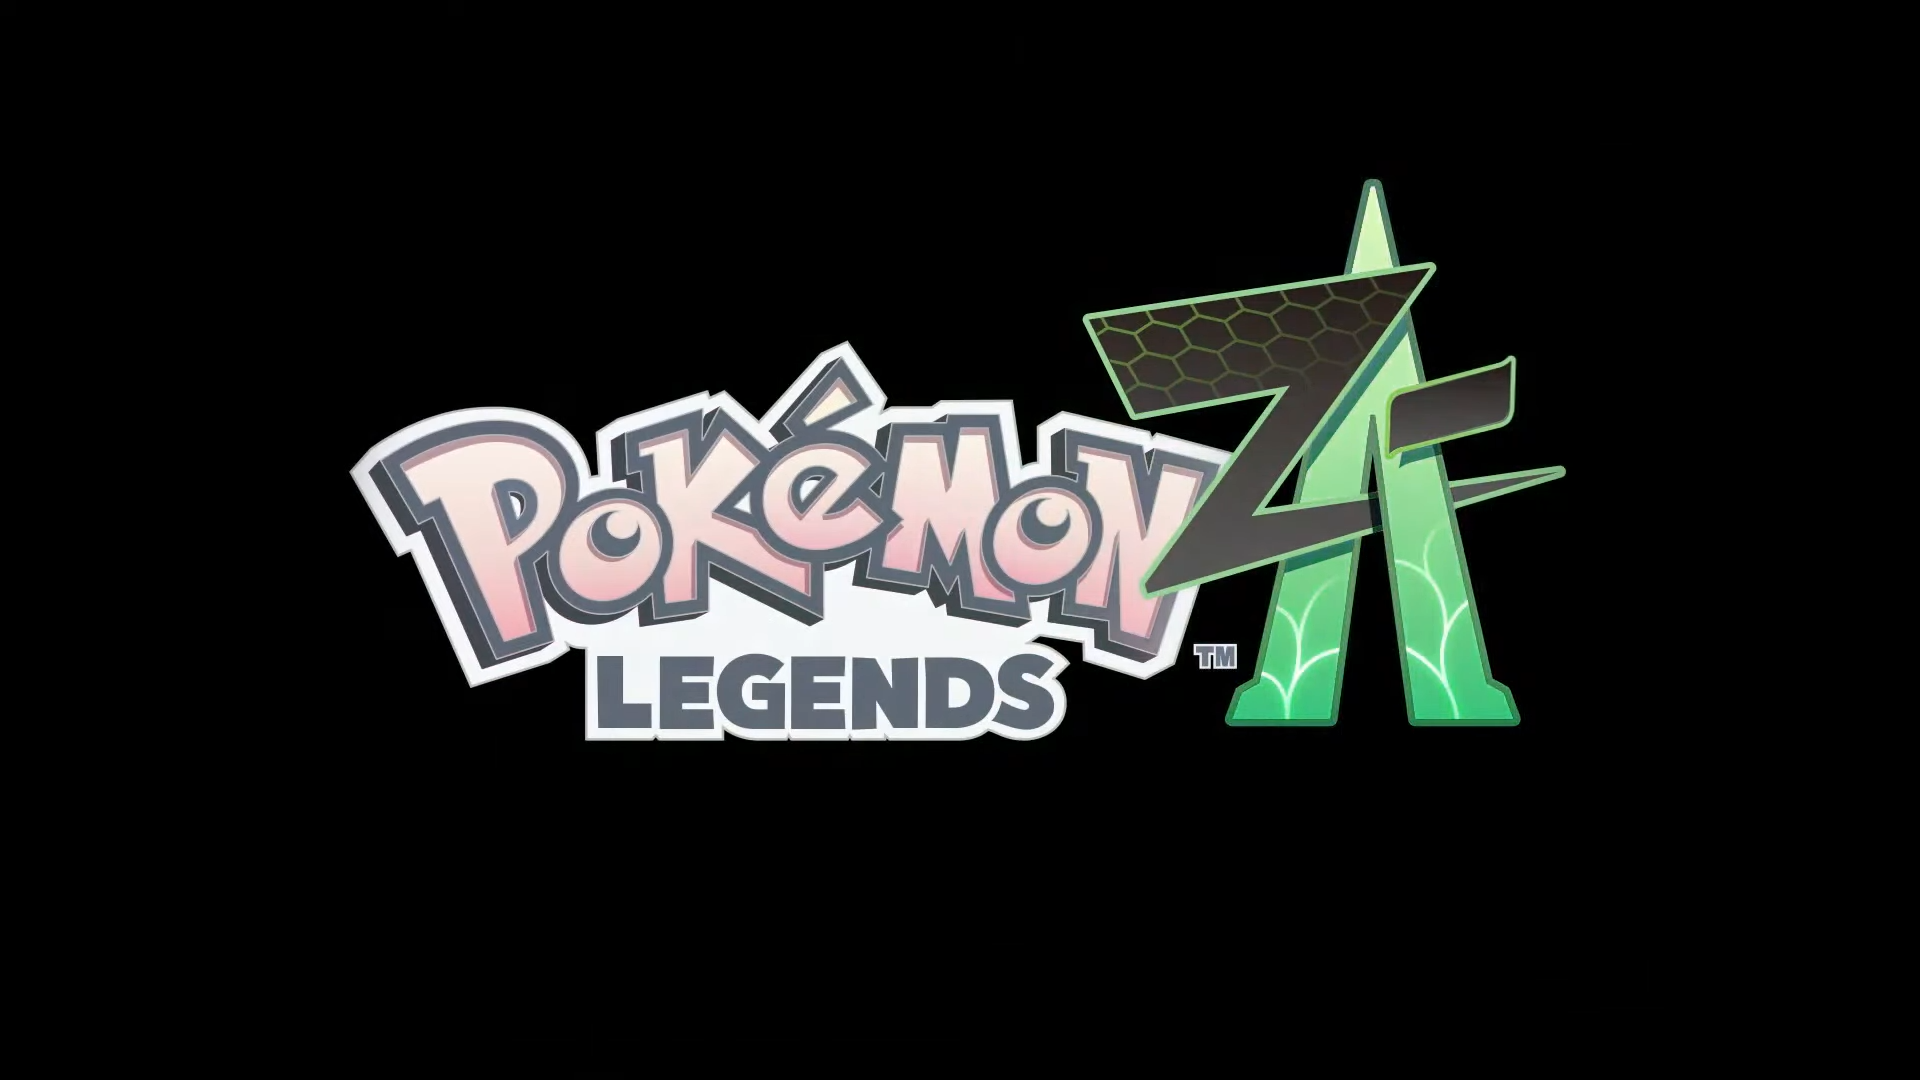 Pokémon Legends ZA aangekondigd als nieuwe Pokémon-game!